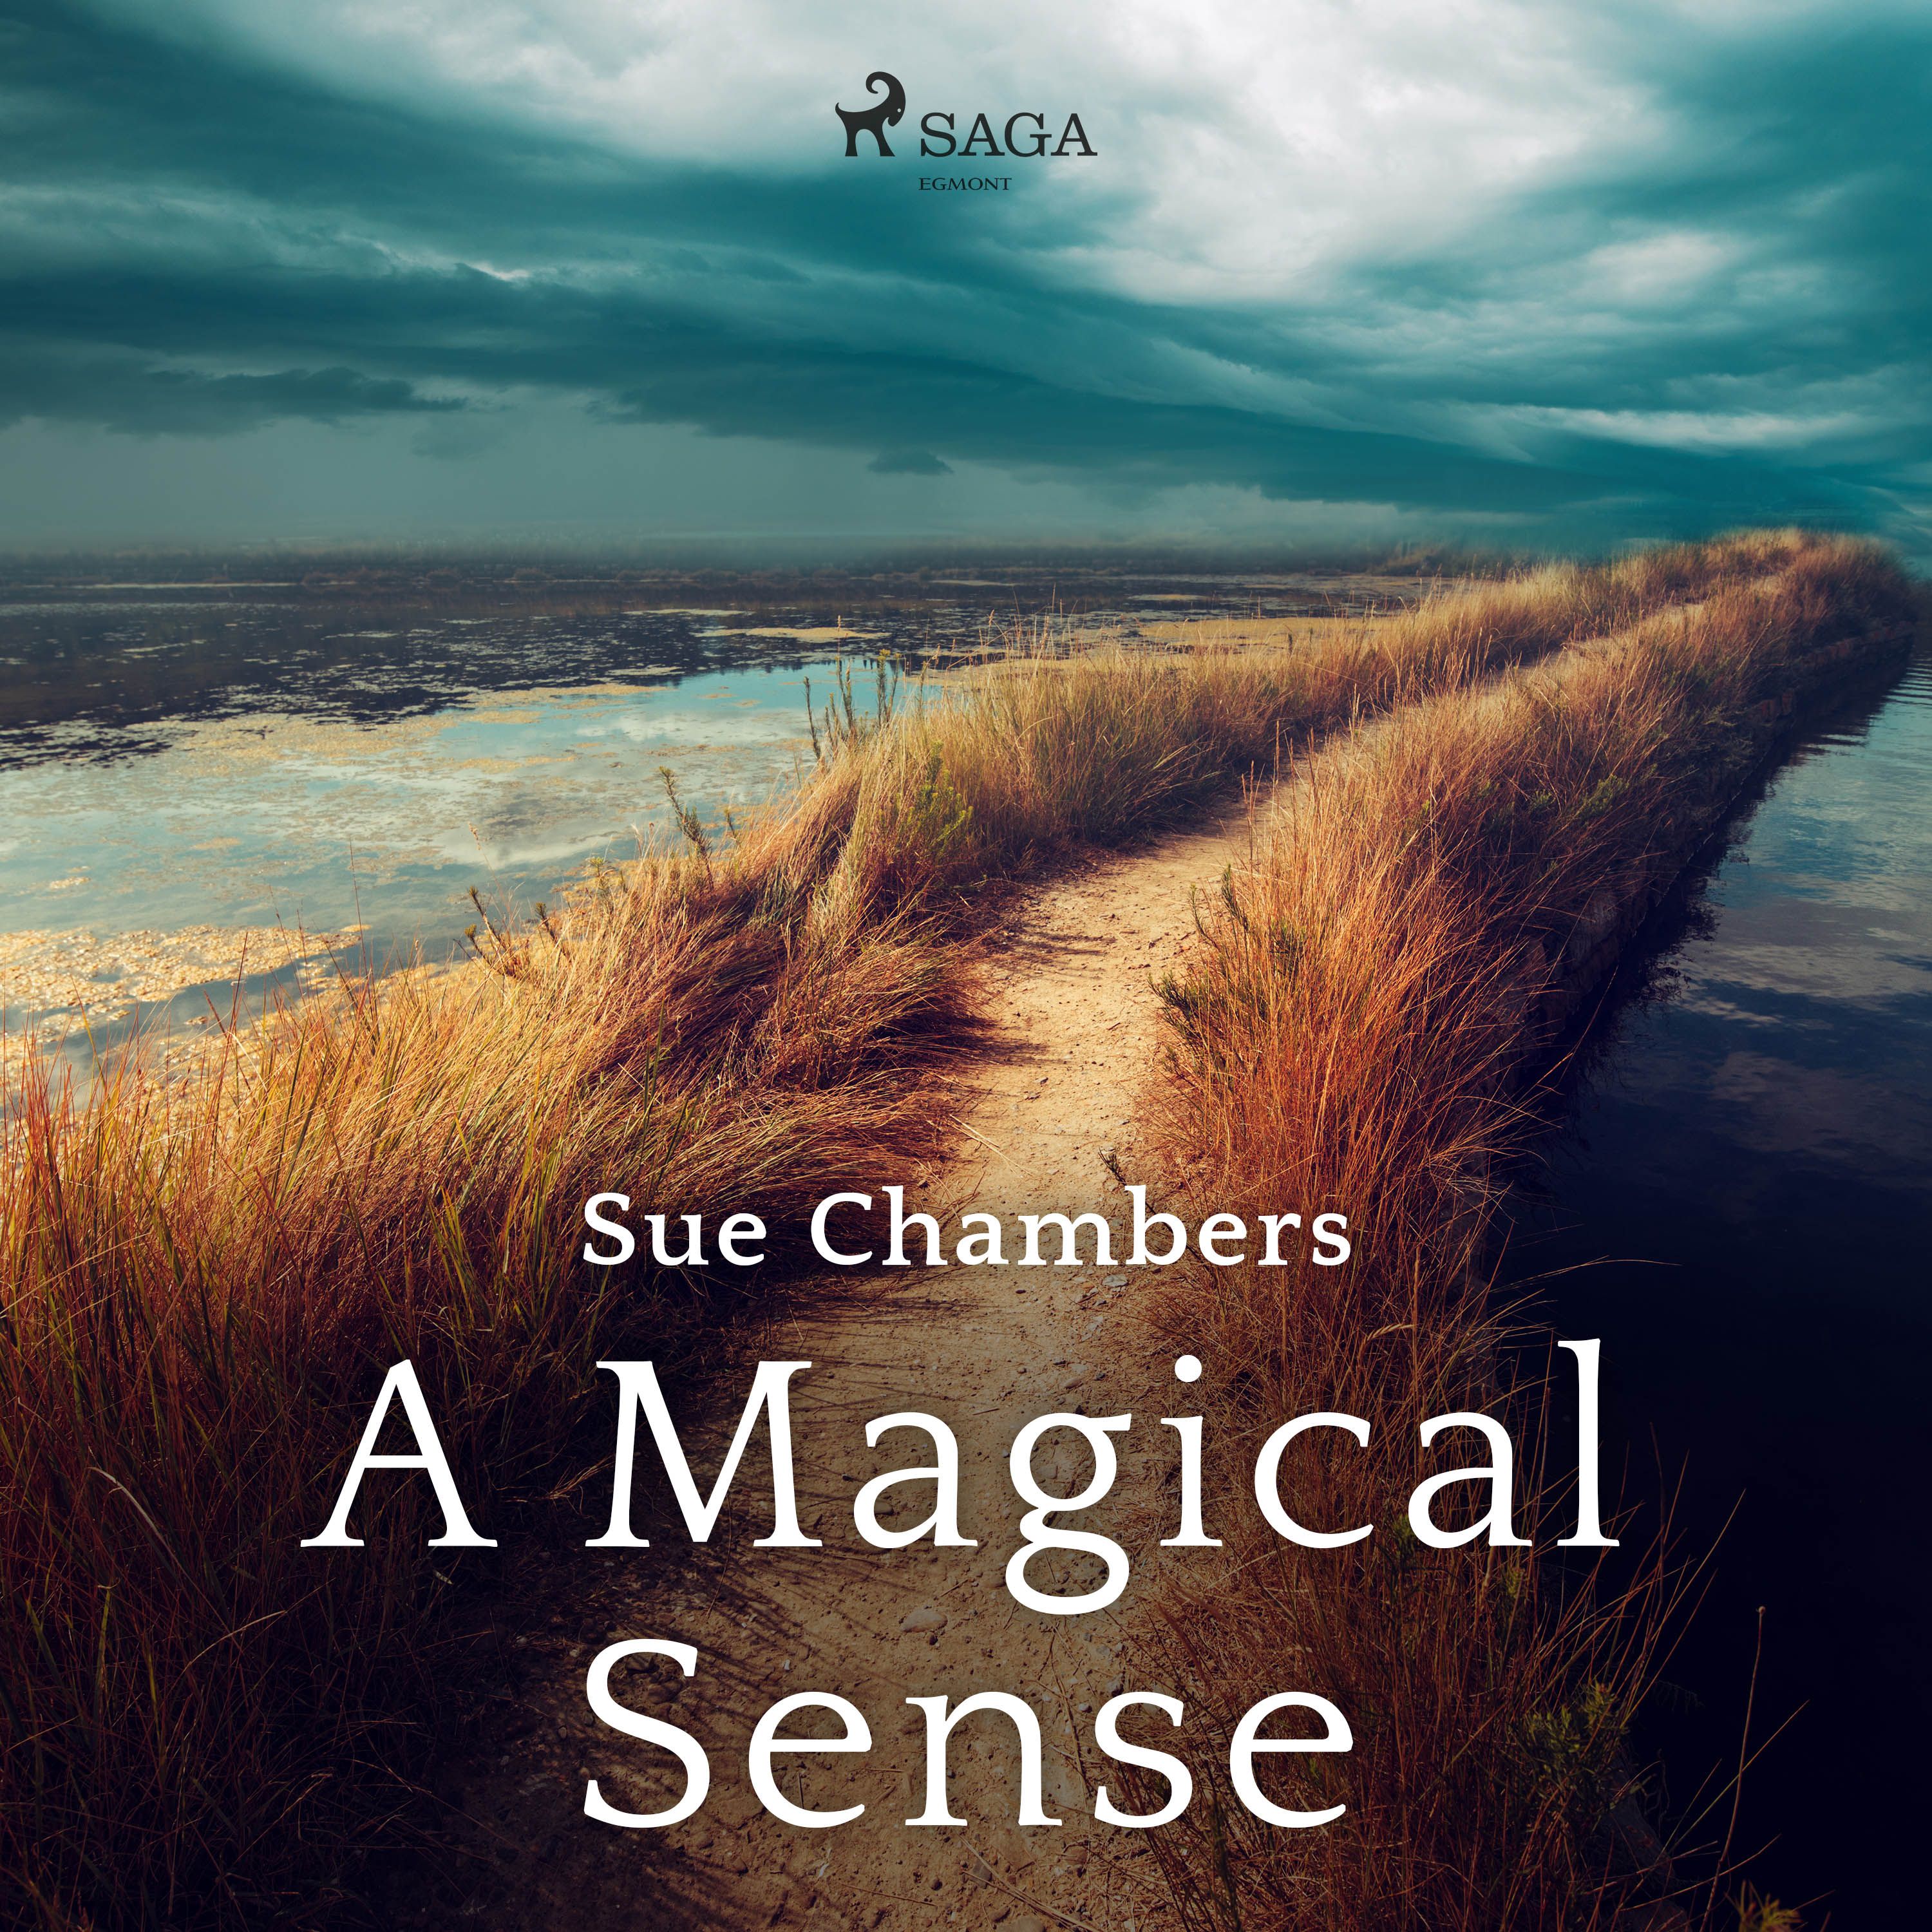 A Magical Sense, ljudbok av Sue Chambers